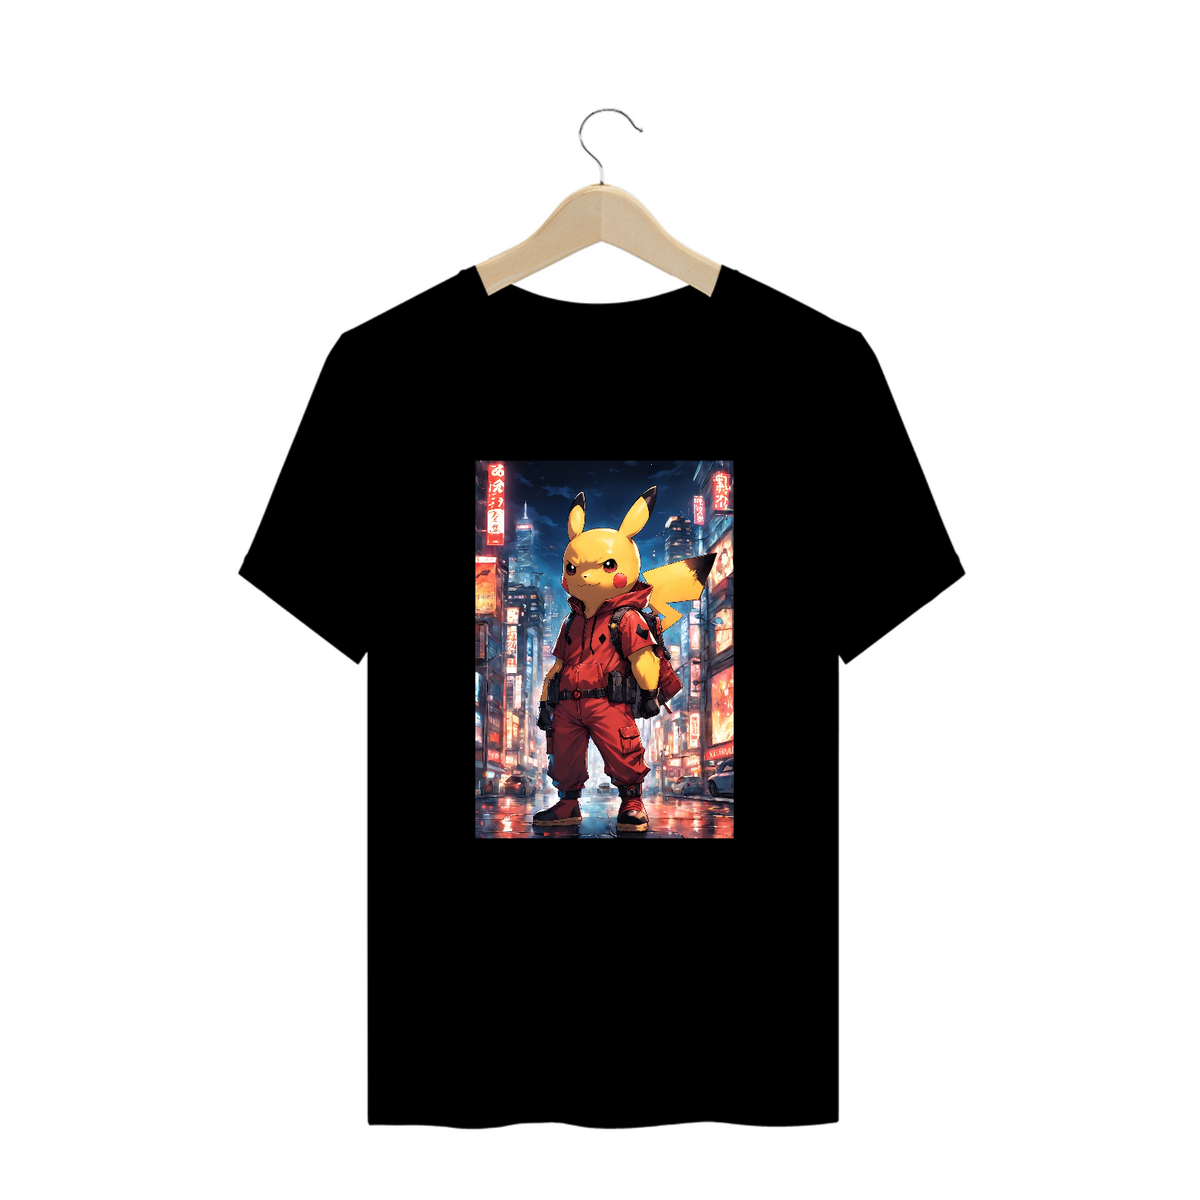 Nome do produto: Camisa Pikachu